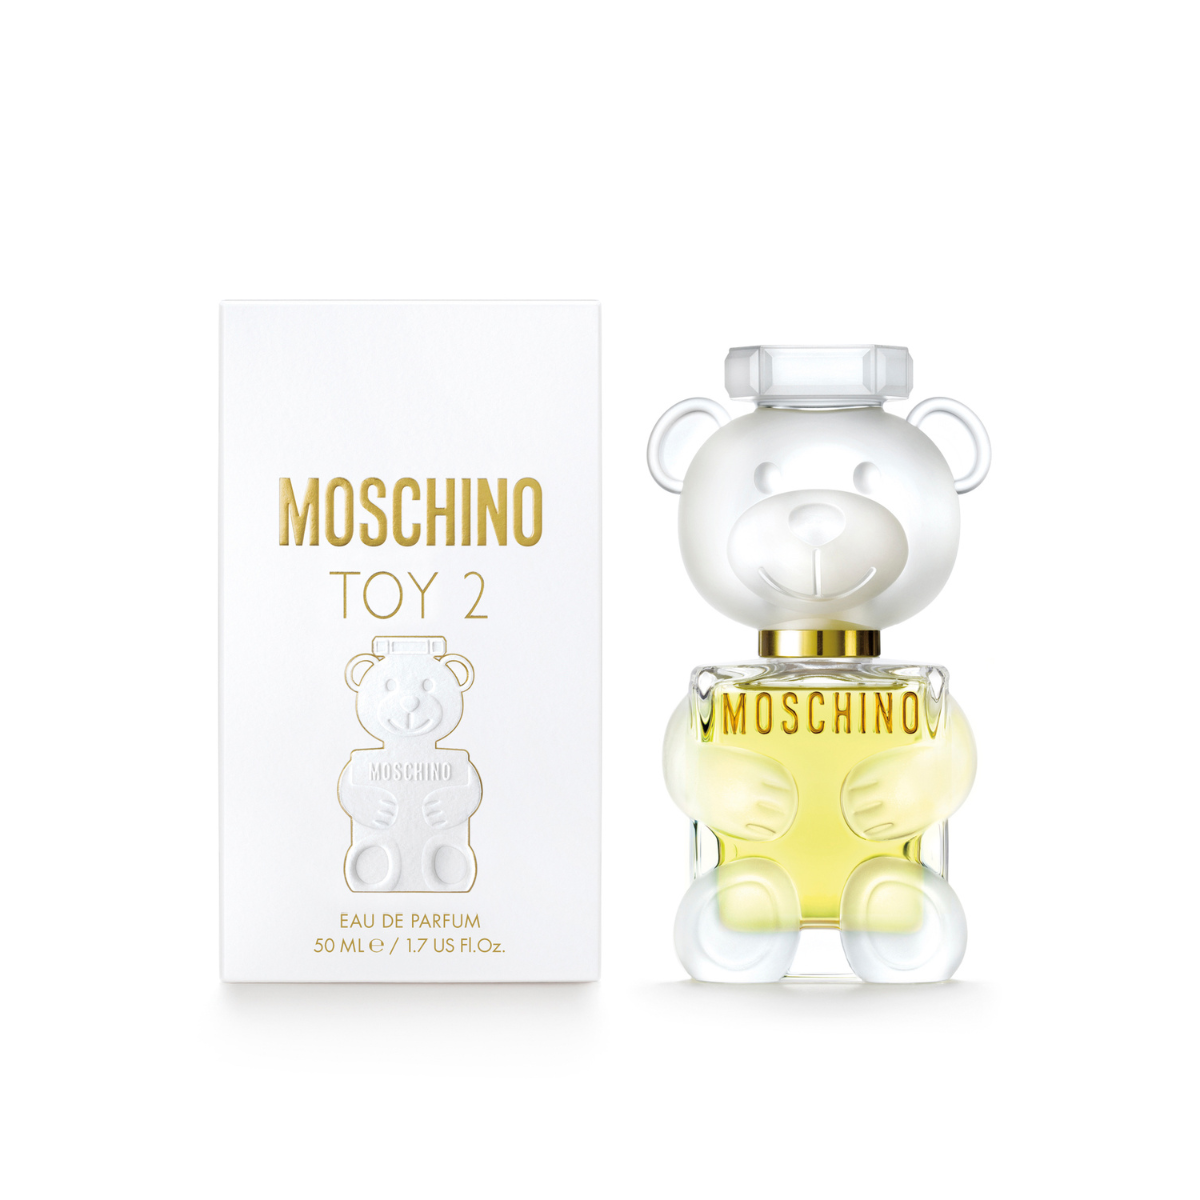 Moschino Toy 2 Eau De Parfum 50 ml 